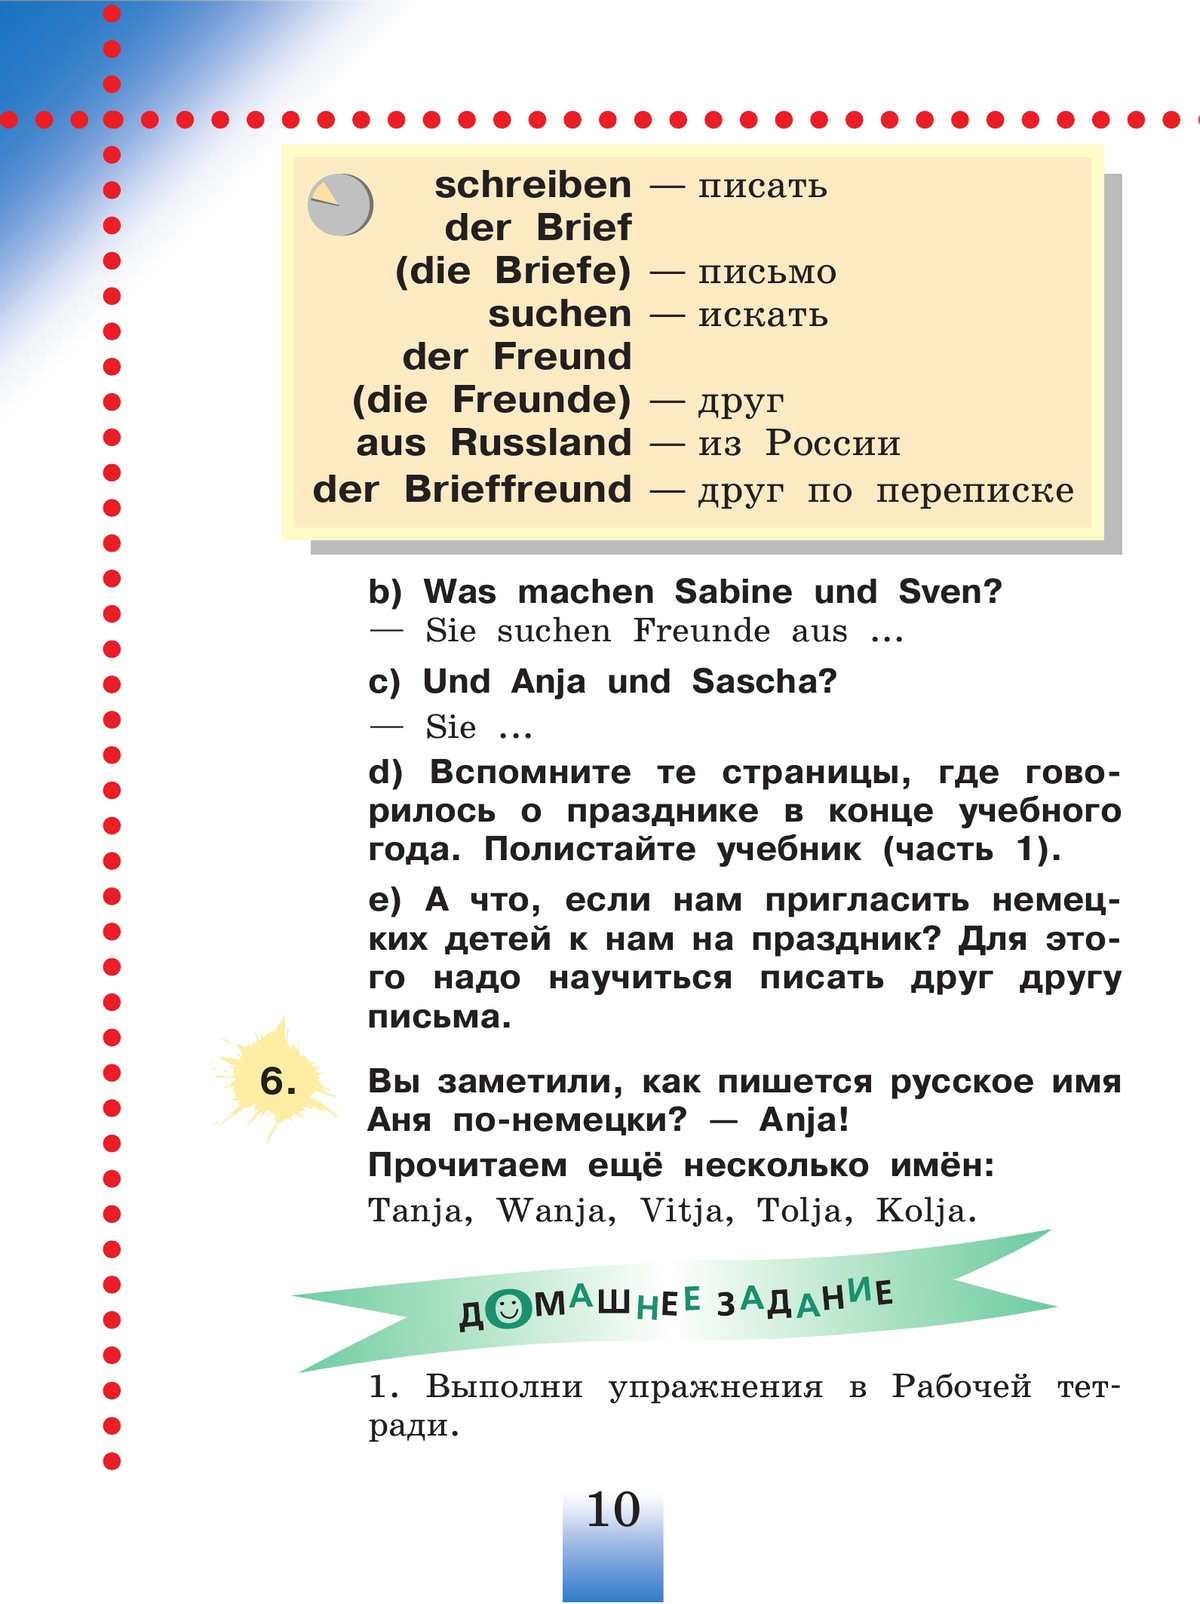 Немецкий язык. 2 класс. Учебник. В 2 ч. Часть 2 5